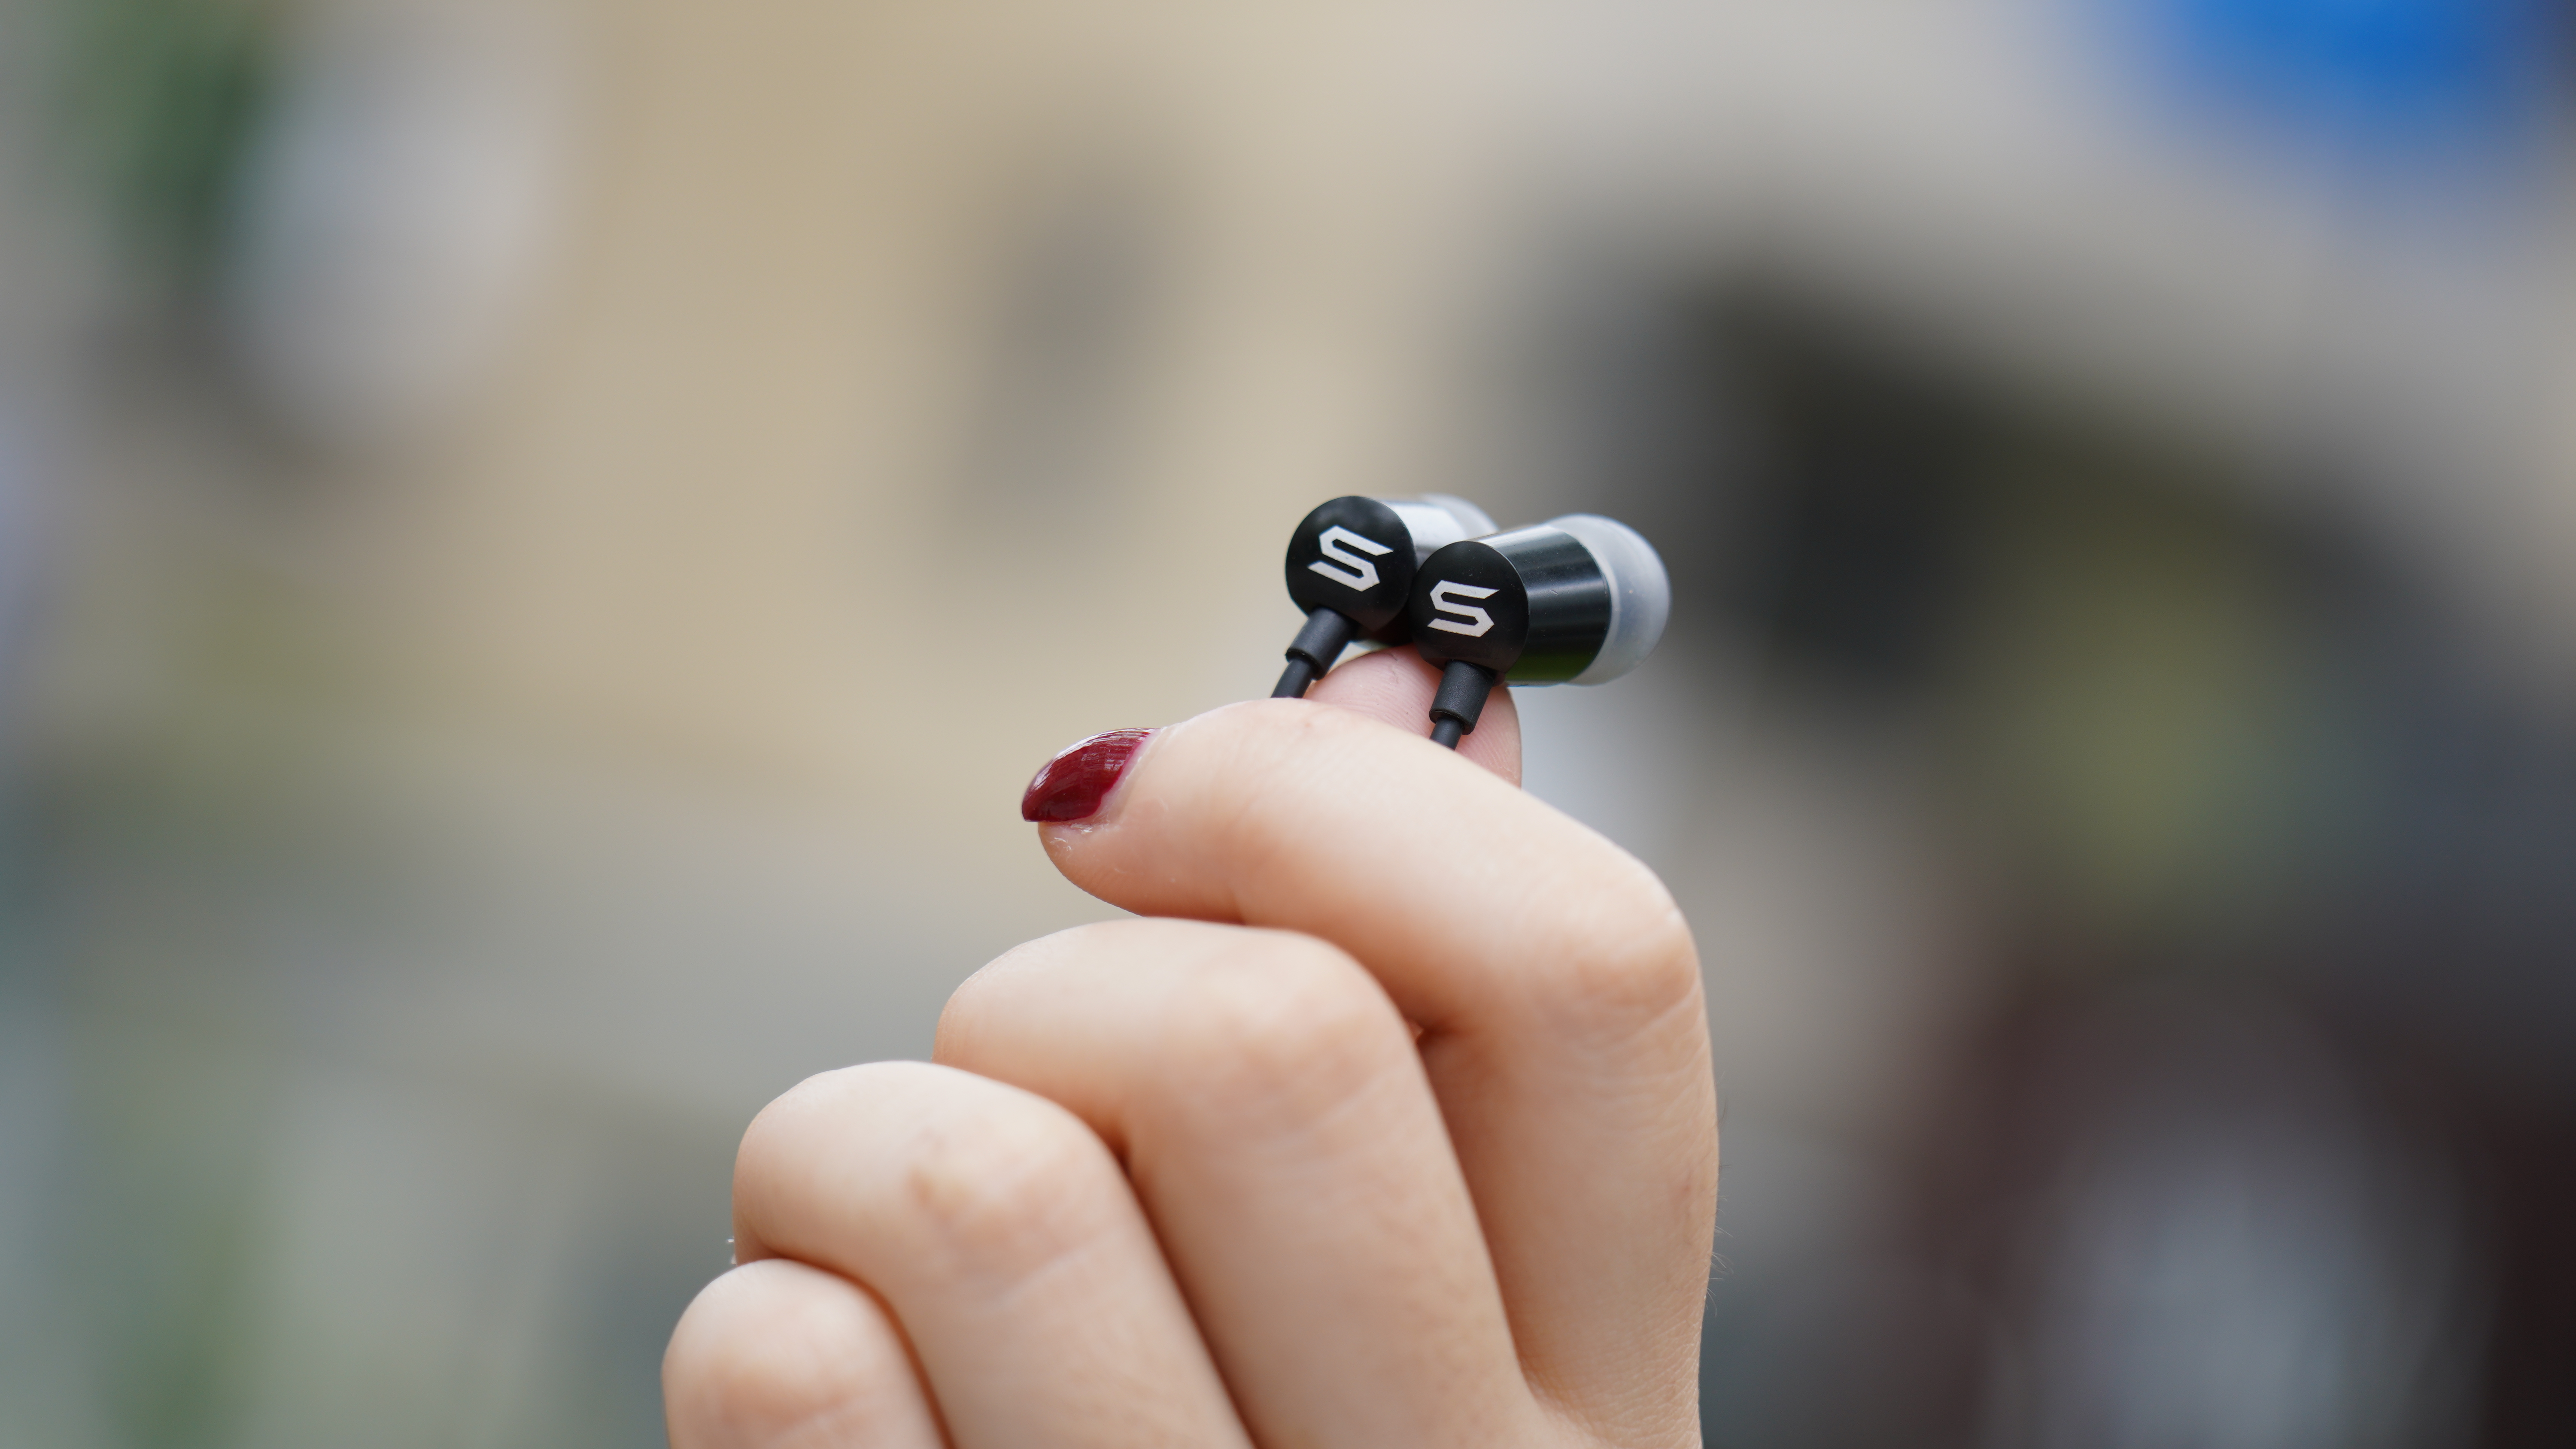 「開箱」輕巧多色好攜帶 - SOUL Pure Wireless Plus入耳式藍牙耳機 - PureWirelessPlus, soul, 入耳式藍牙耳機, 千元藍牙, 藍牙耳機 - 科技狗 3C DOG